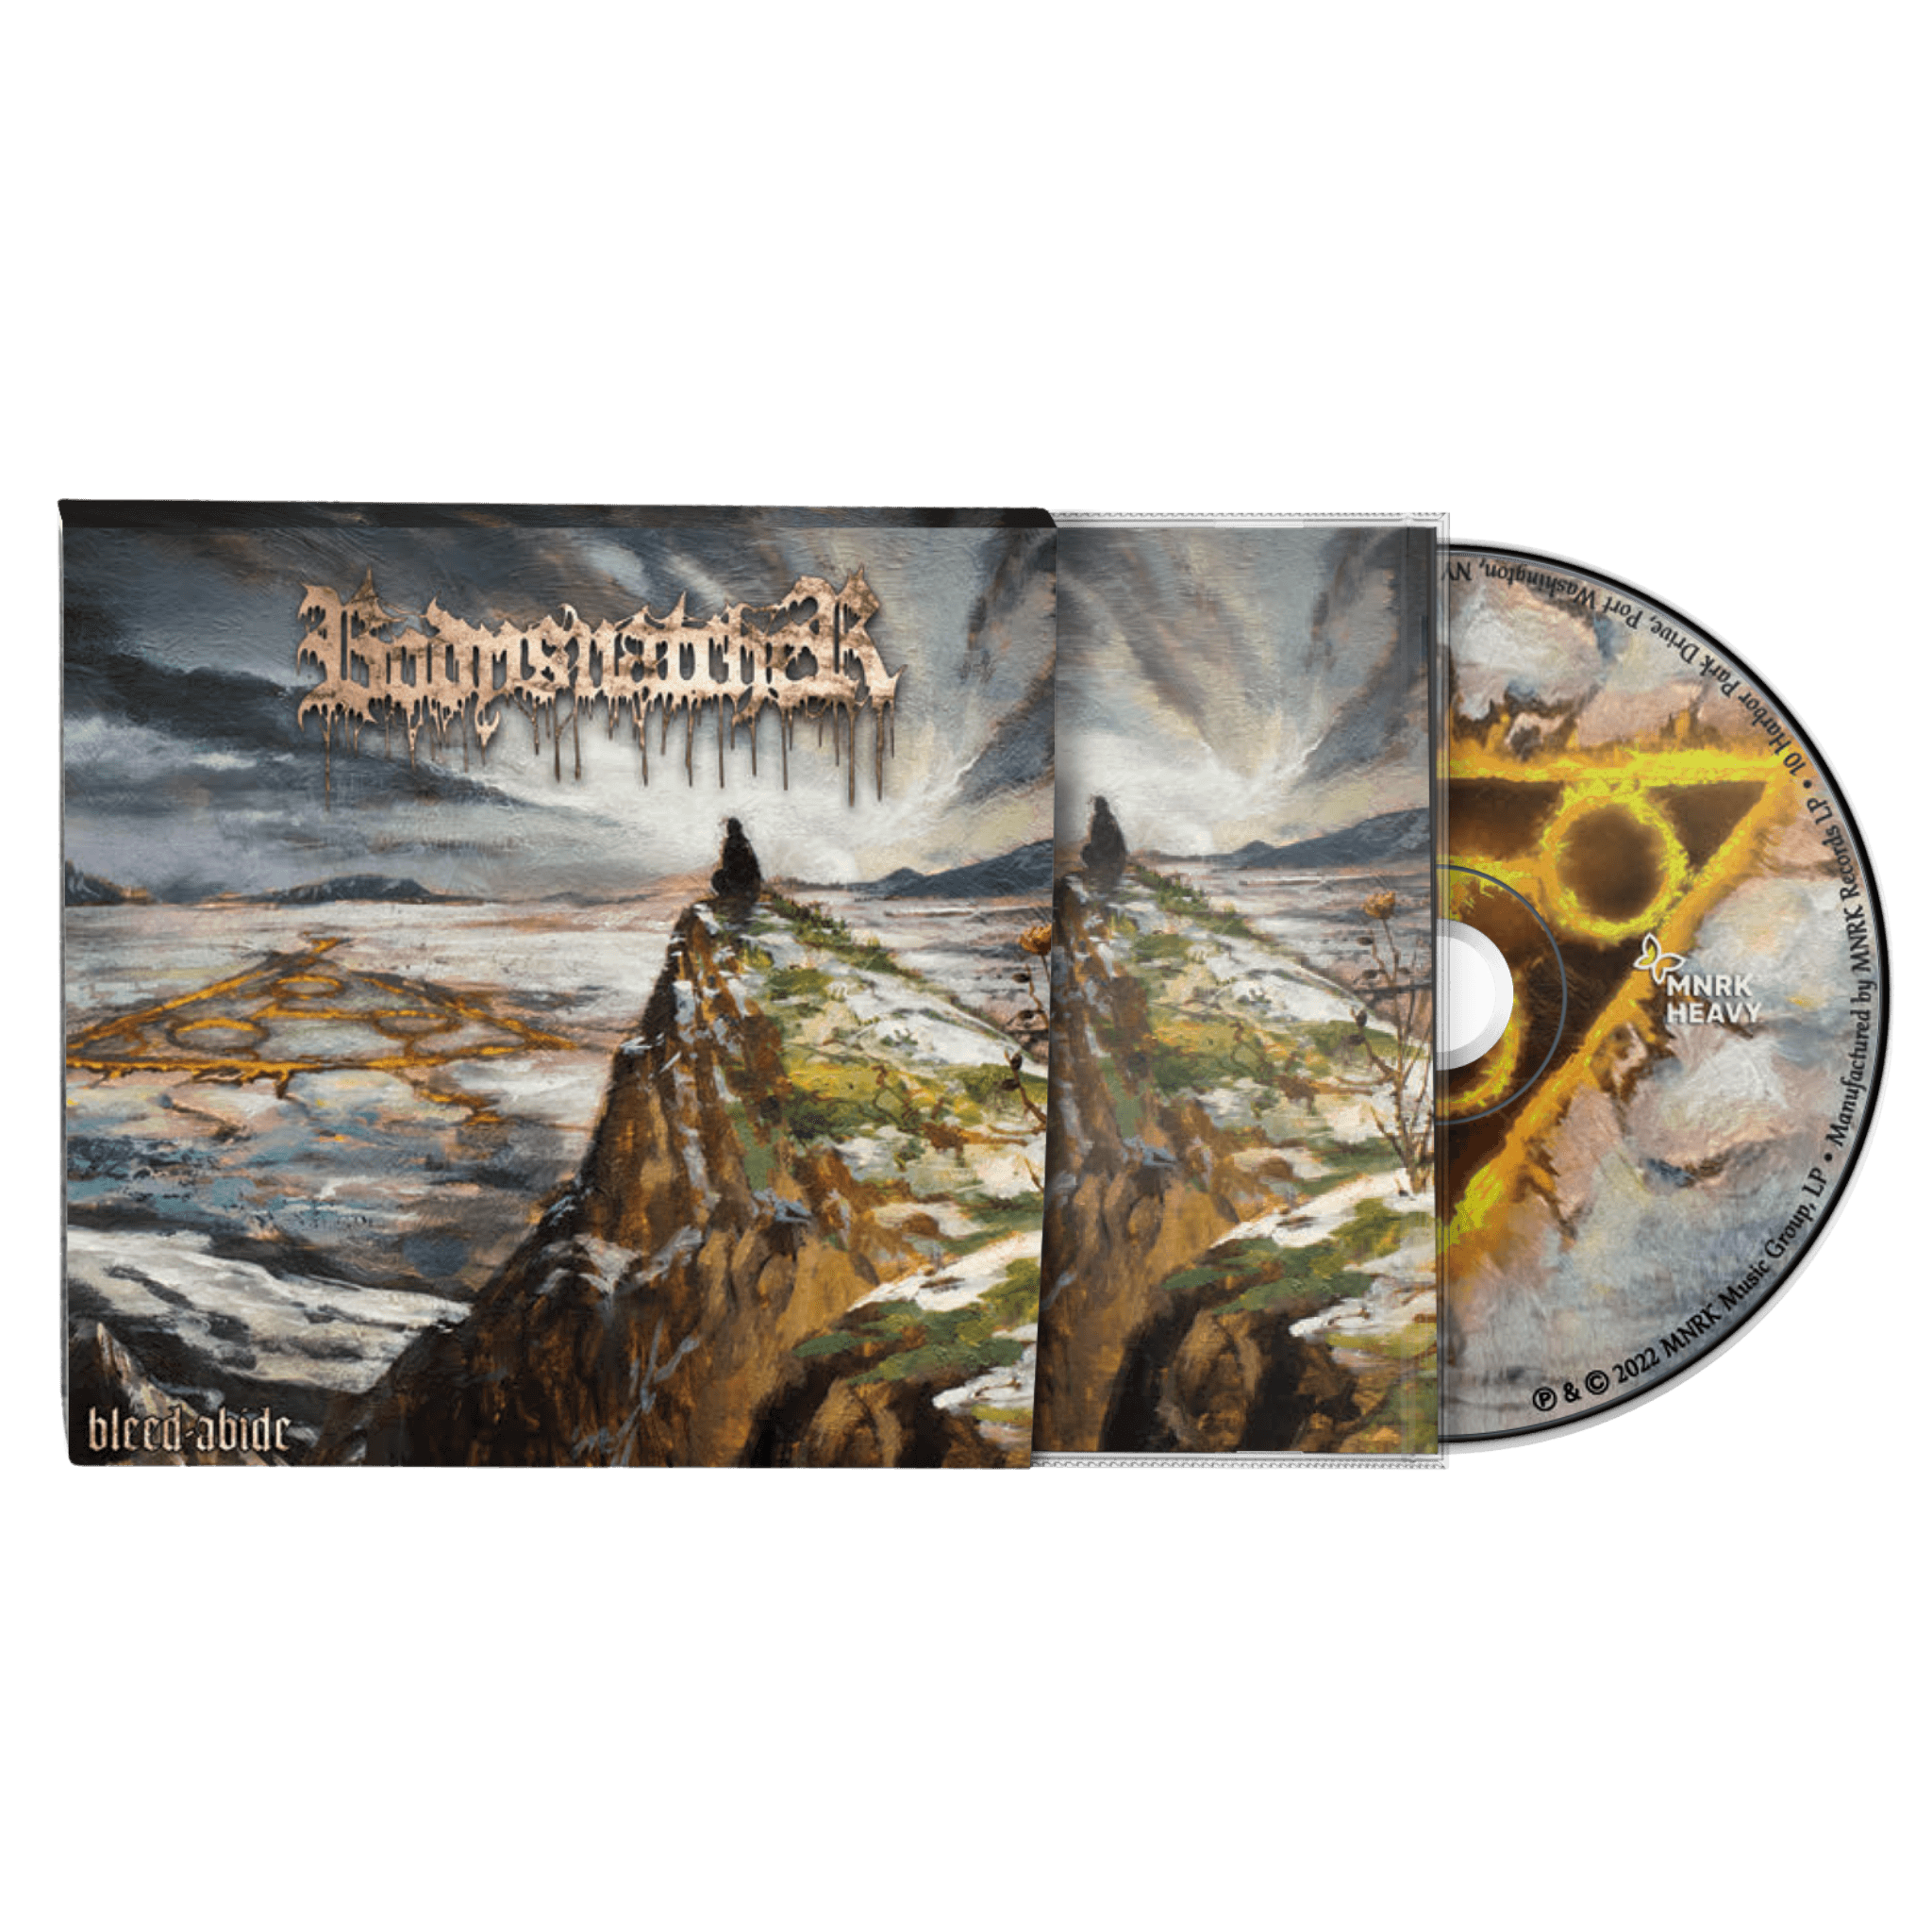 Bodysnatcher Official Merchandise Bleed-Abide CD